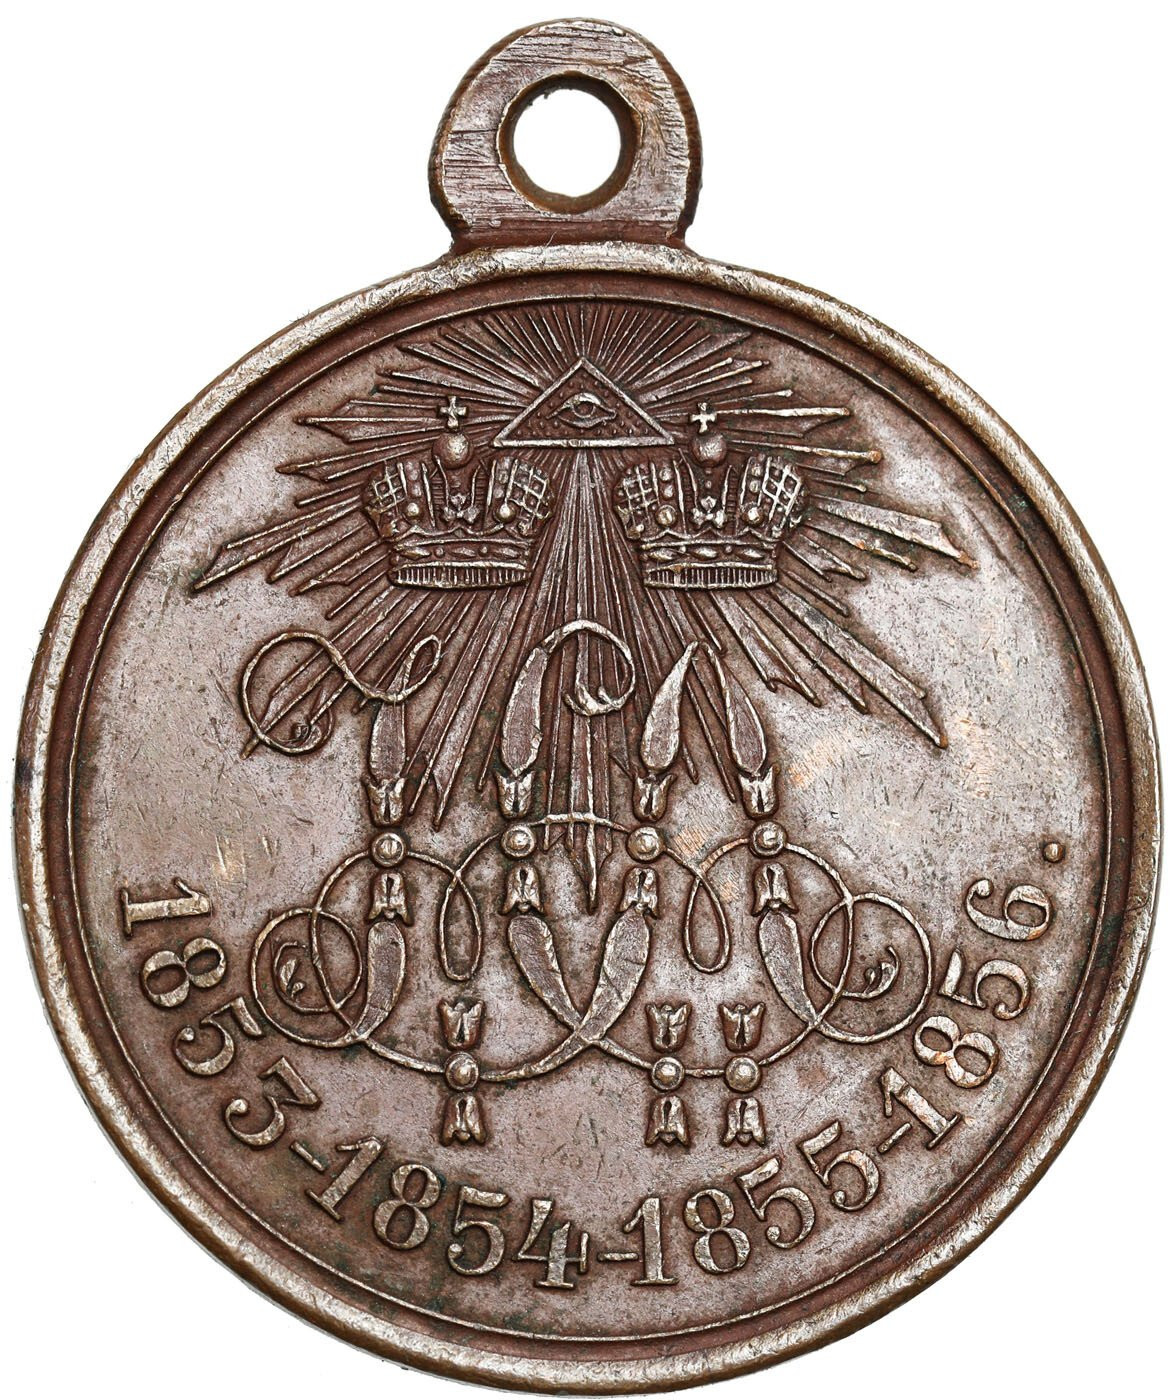 Rosja. Aleksander II. Medal za wojnę krymską 1853-1856, brąz – PIĘKNY